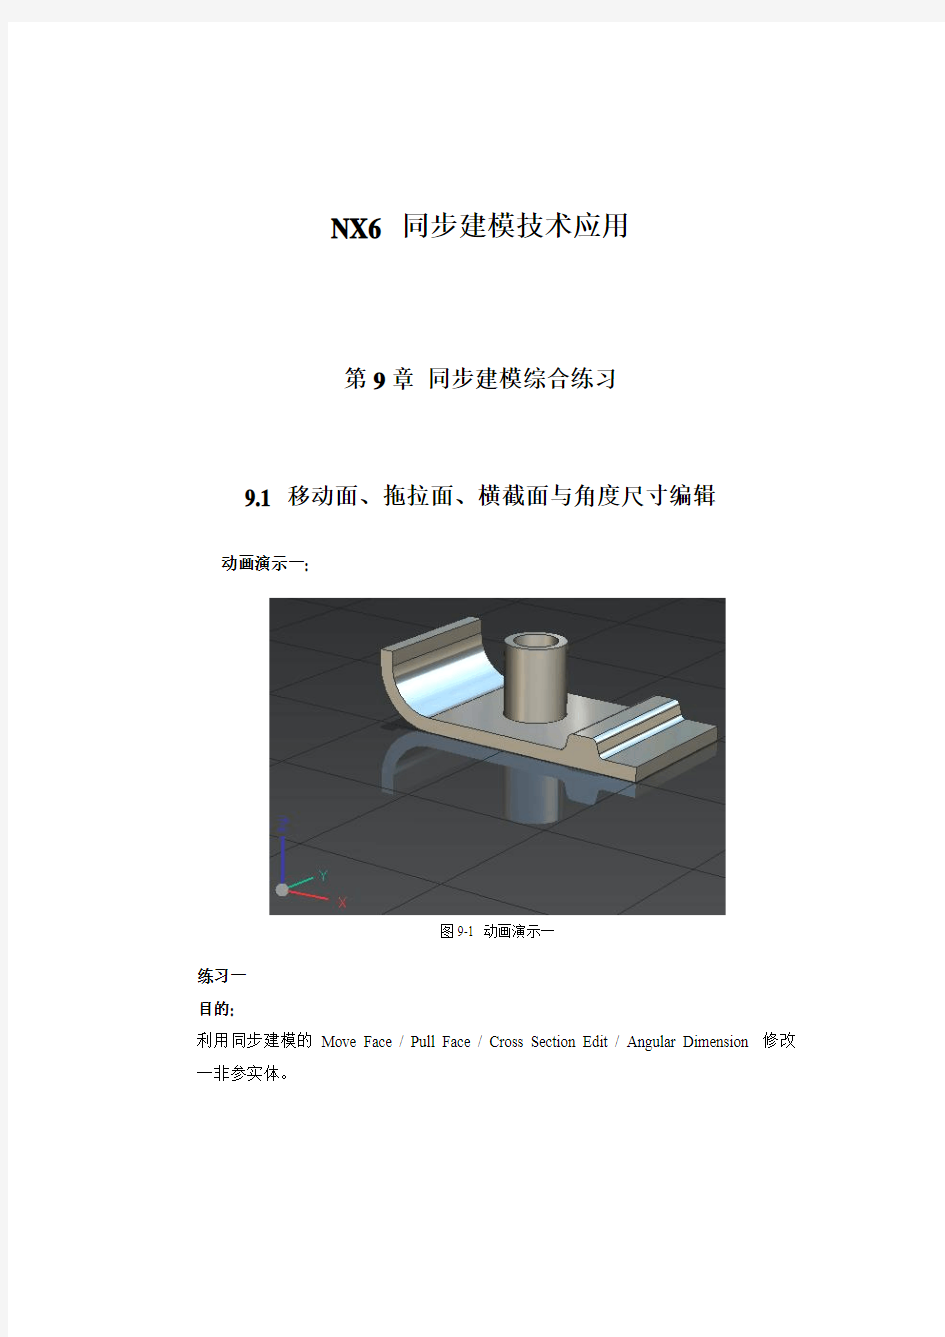 NX6 同步建模技术培训教程_9